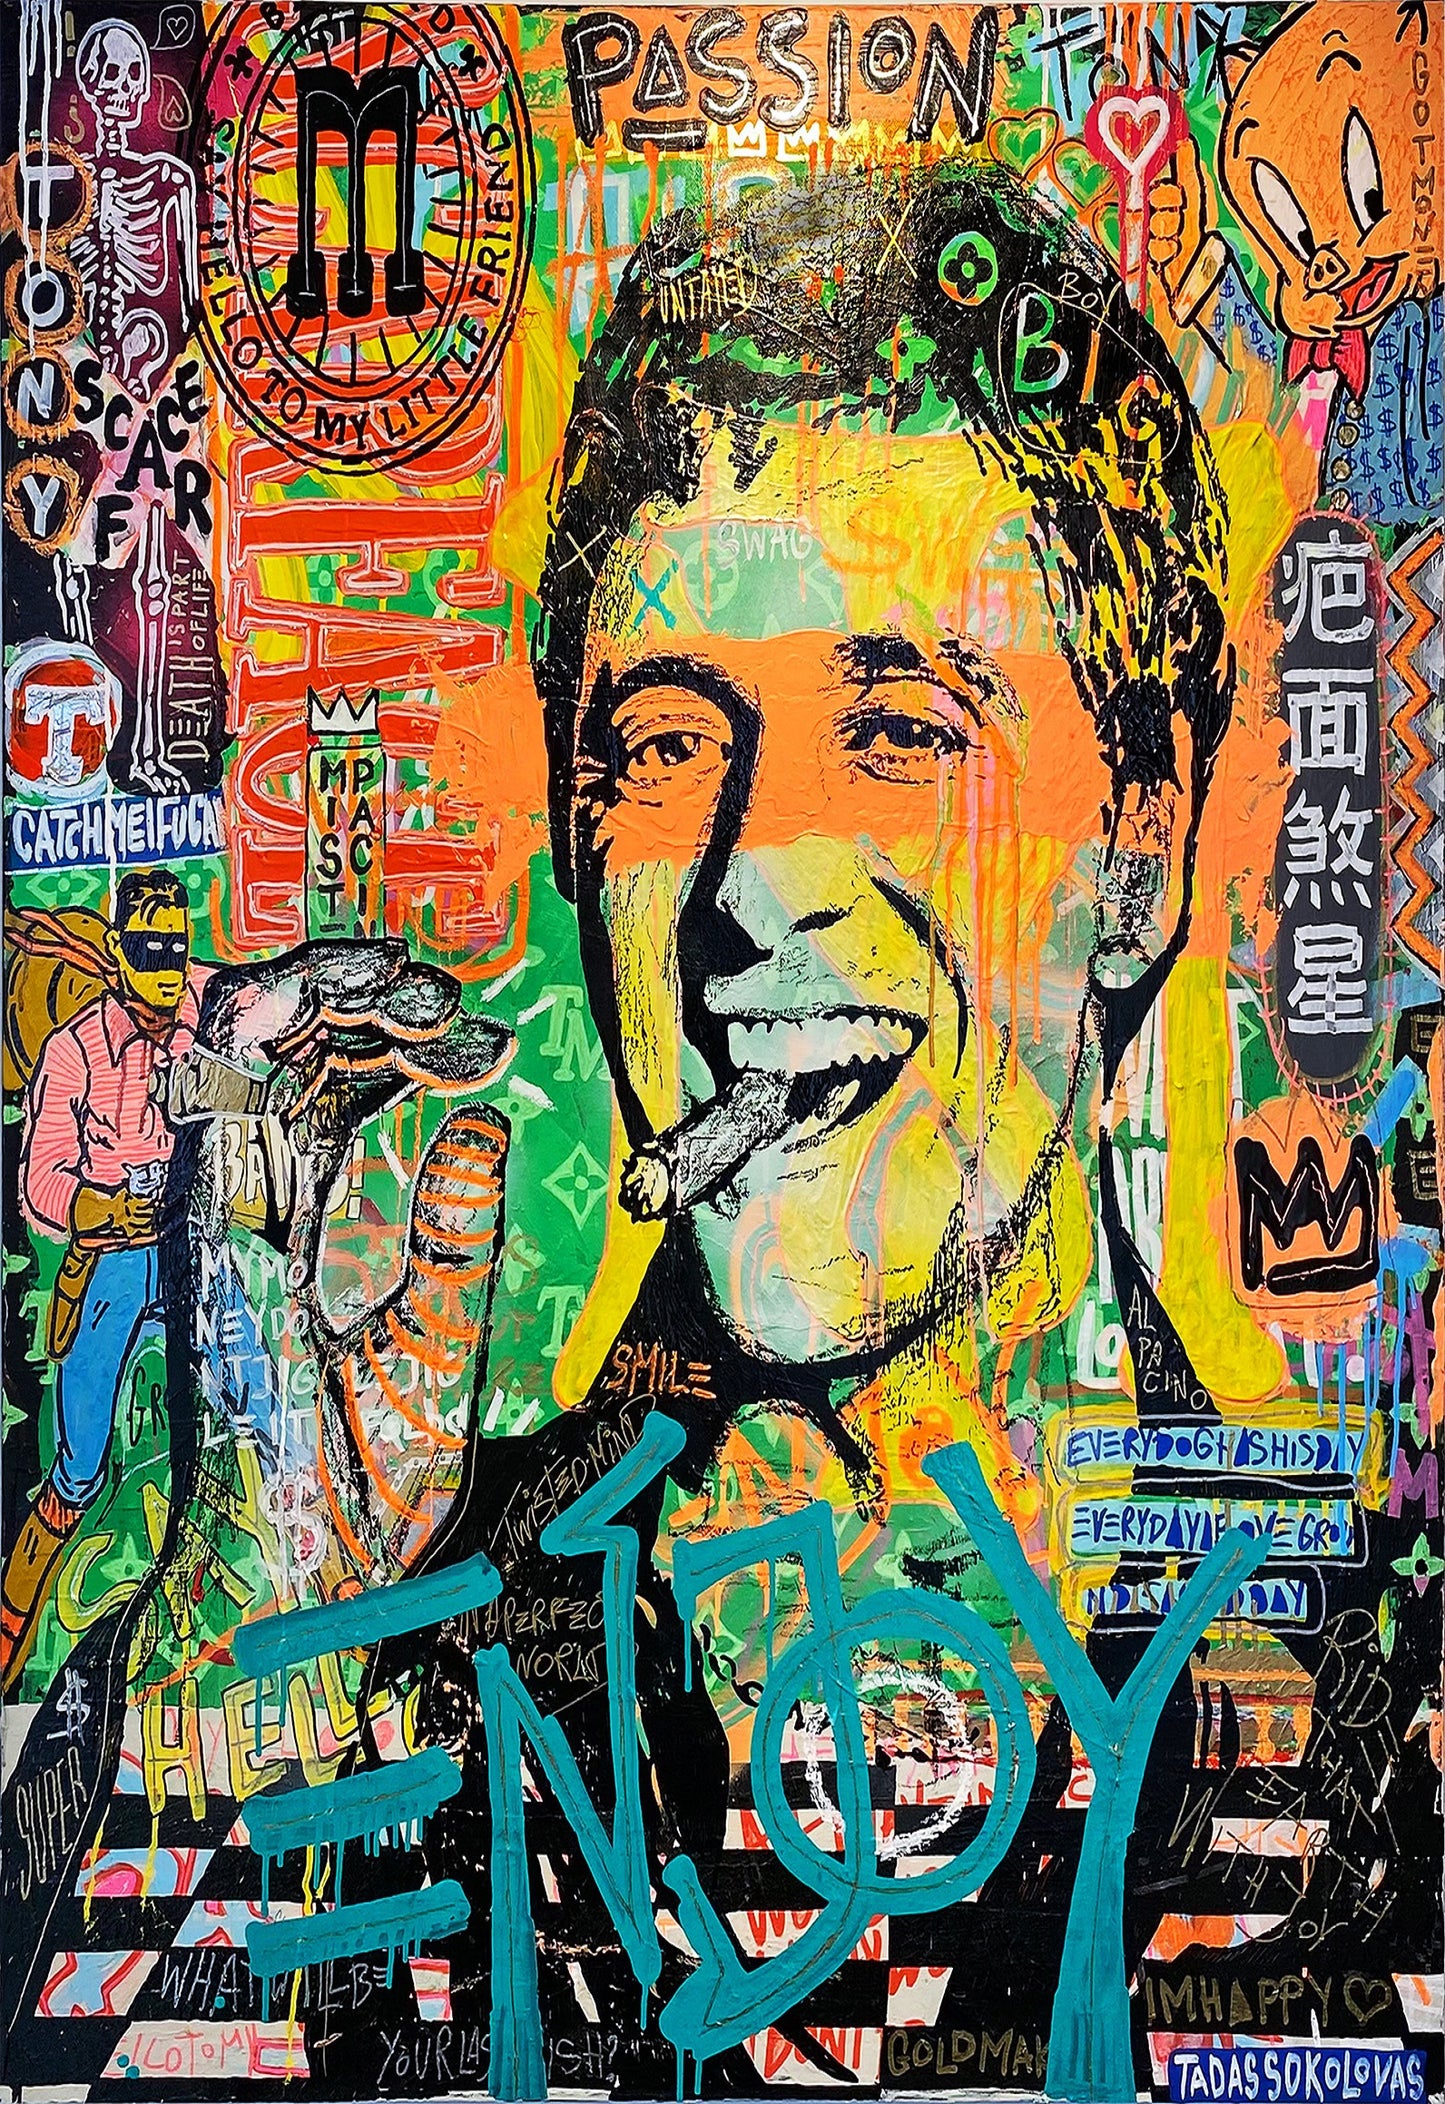 x585 XXL Leinwandbilder Al Pacino Scarface Enjoy Zigarre Filme Hollywood Handgemalt Street Art Look - MEGA XXXL 160X90 CM Leinwandbilder inkl. Holzrahmen